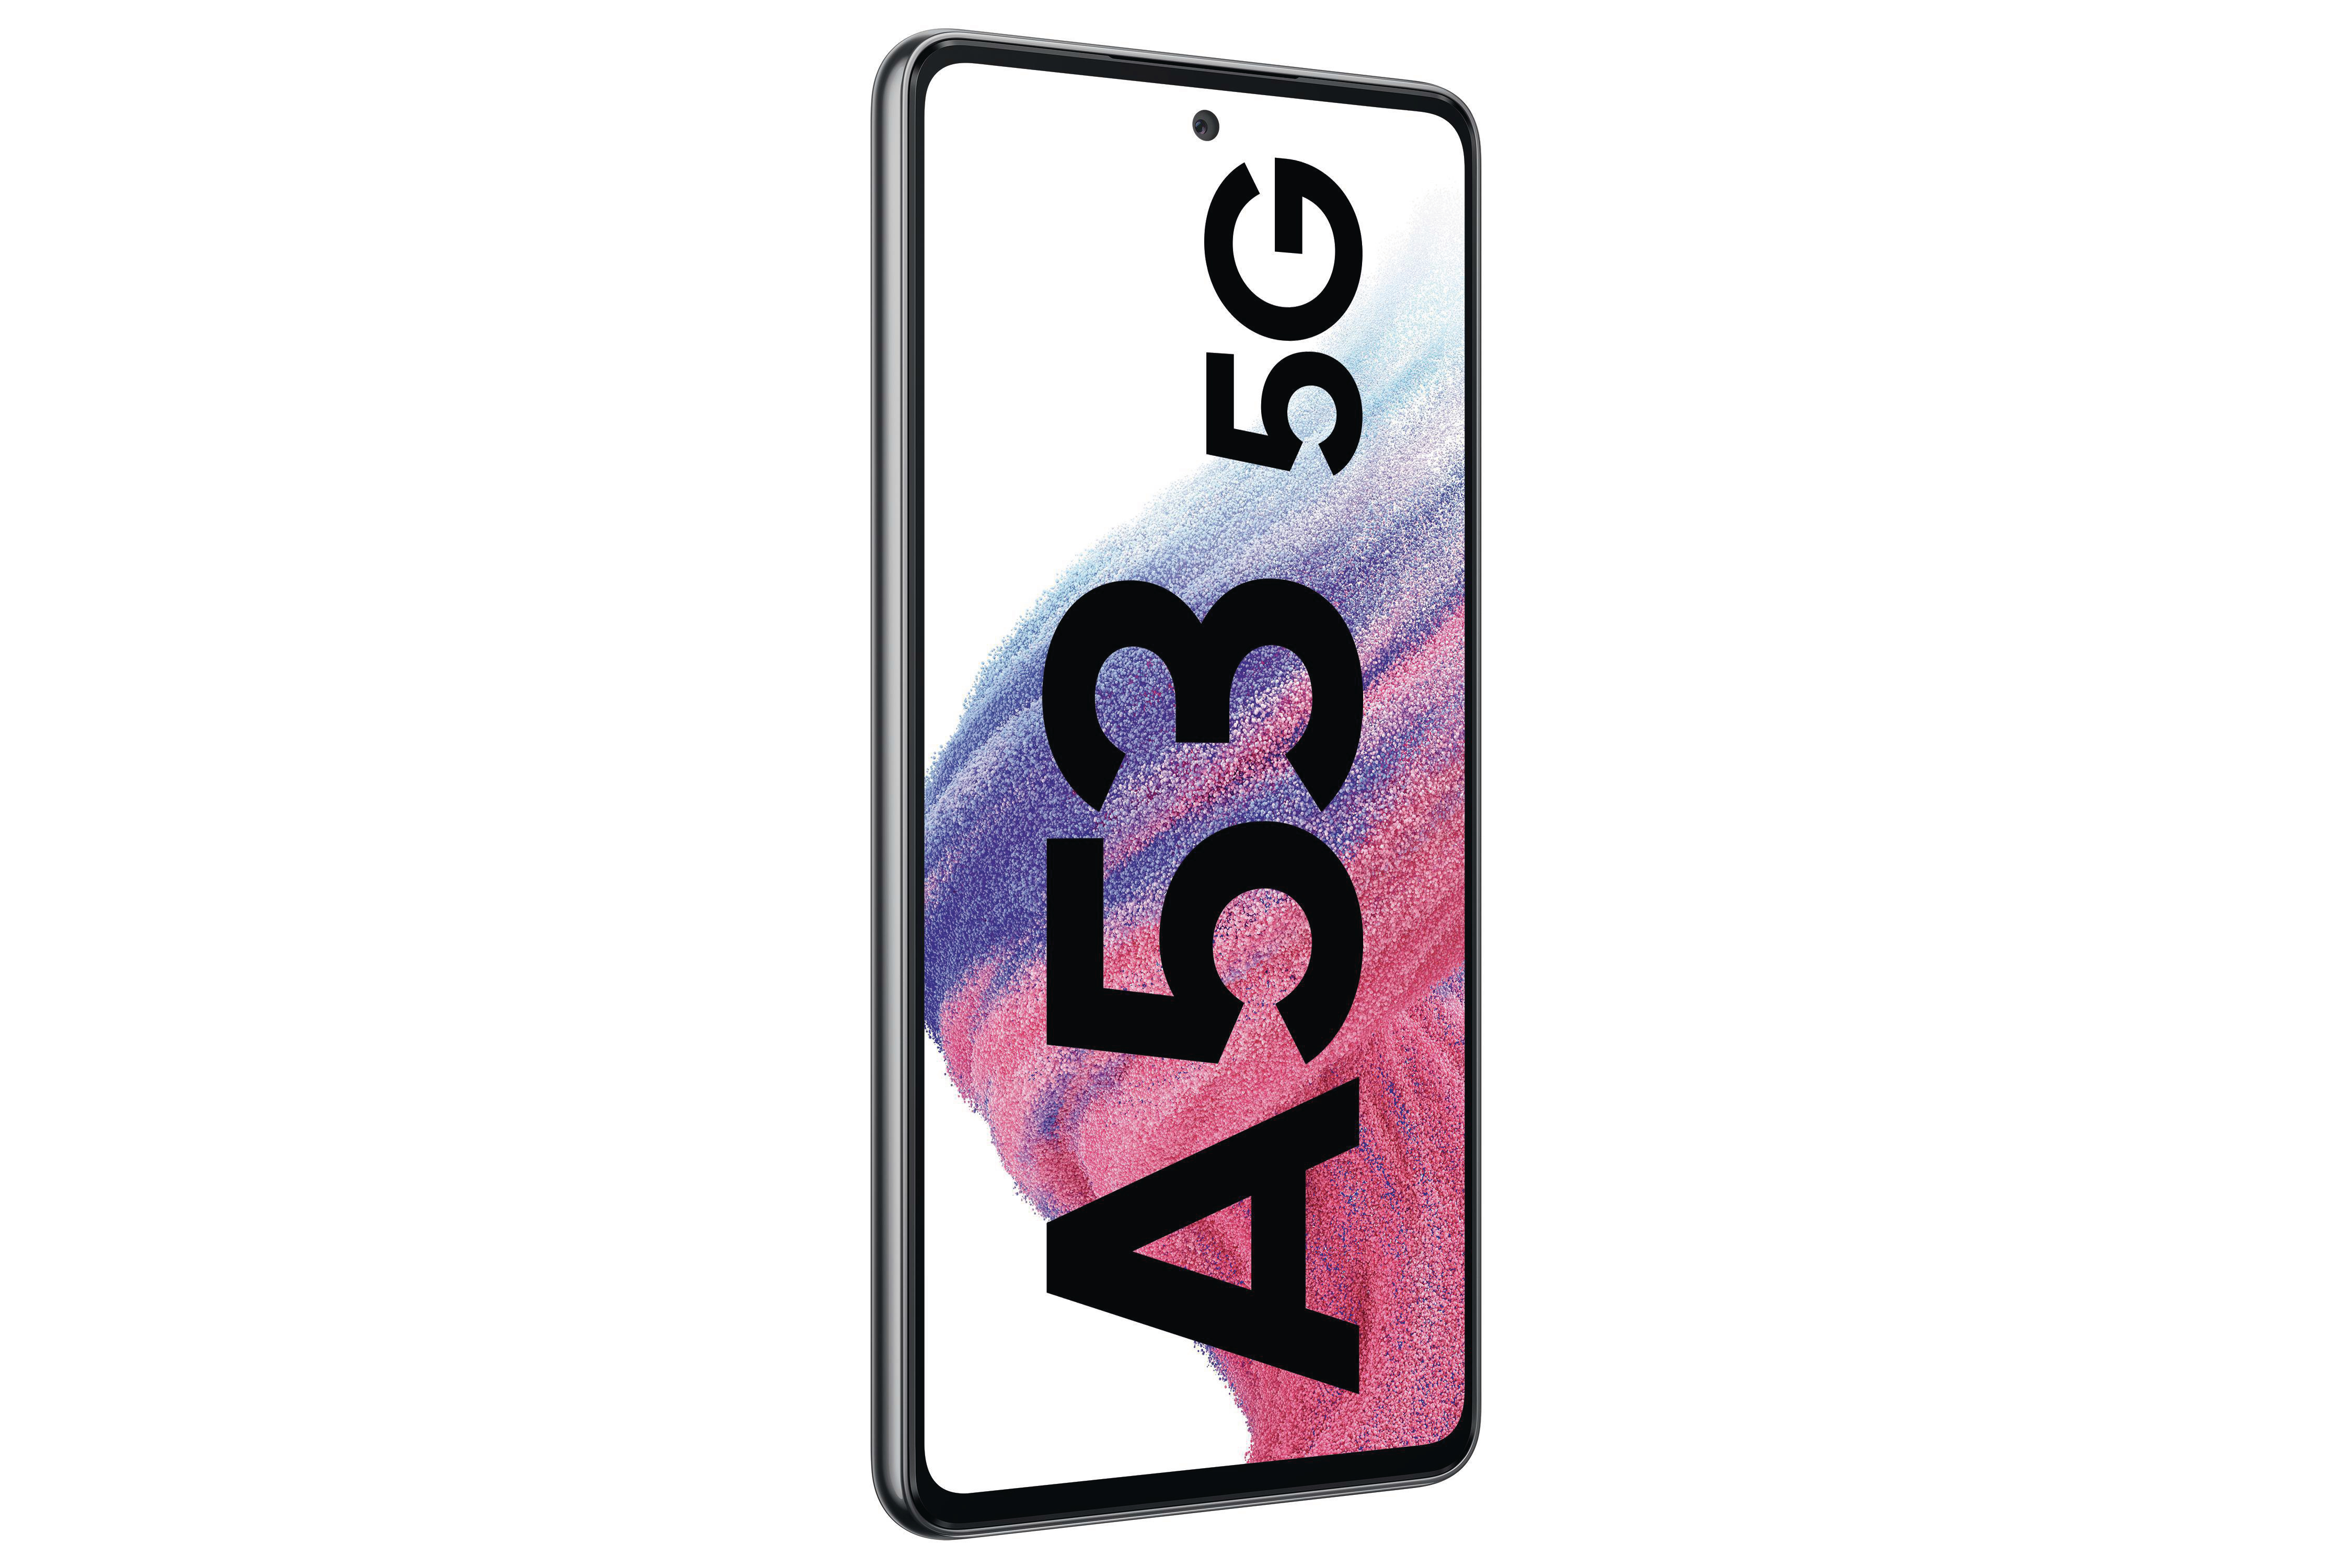 SAMSUNG Galaxy GB SIM 256 5G Awesome Dual A53 Black